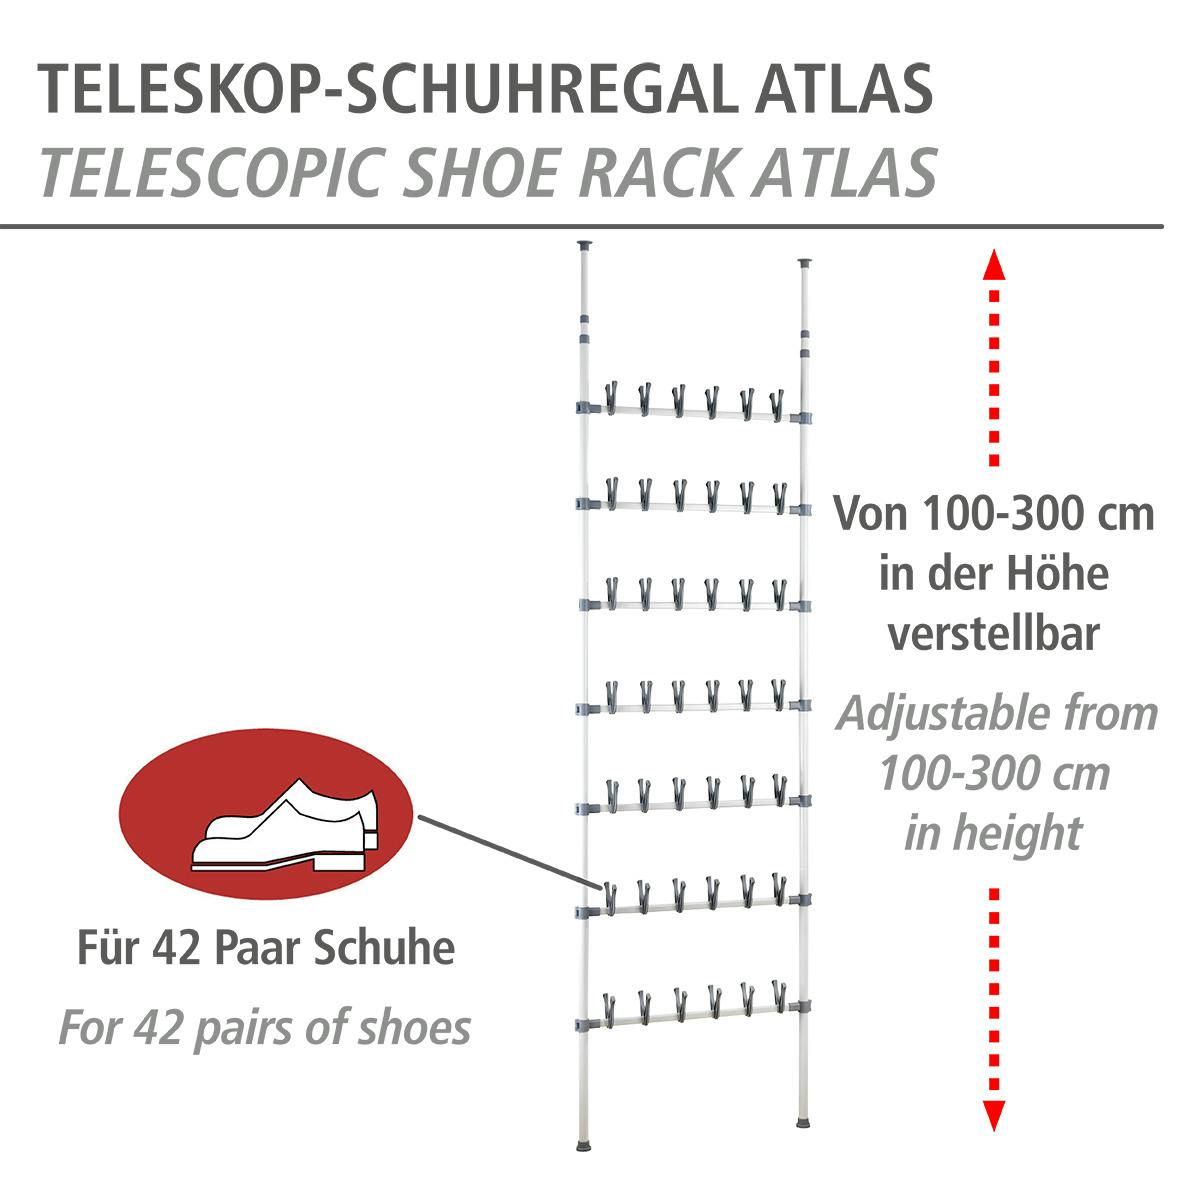 WENKO Teleskop Schuhregal Atlas | Marktplatz METRO